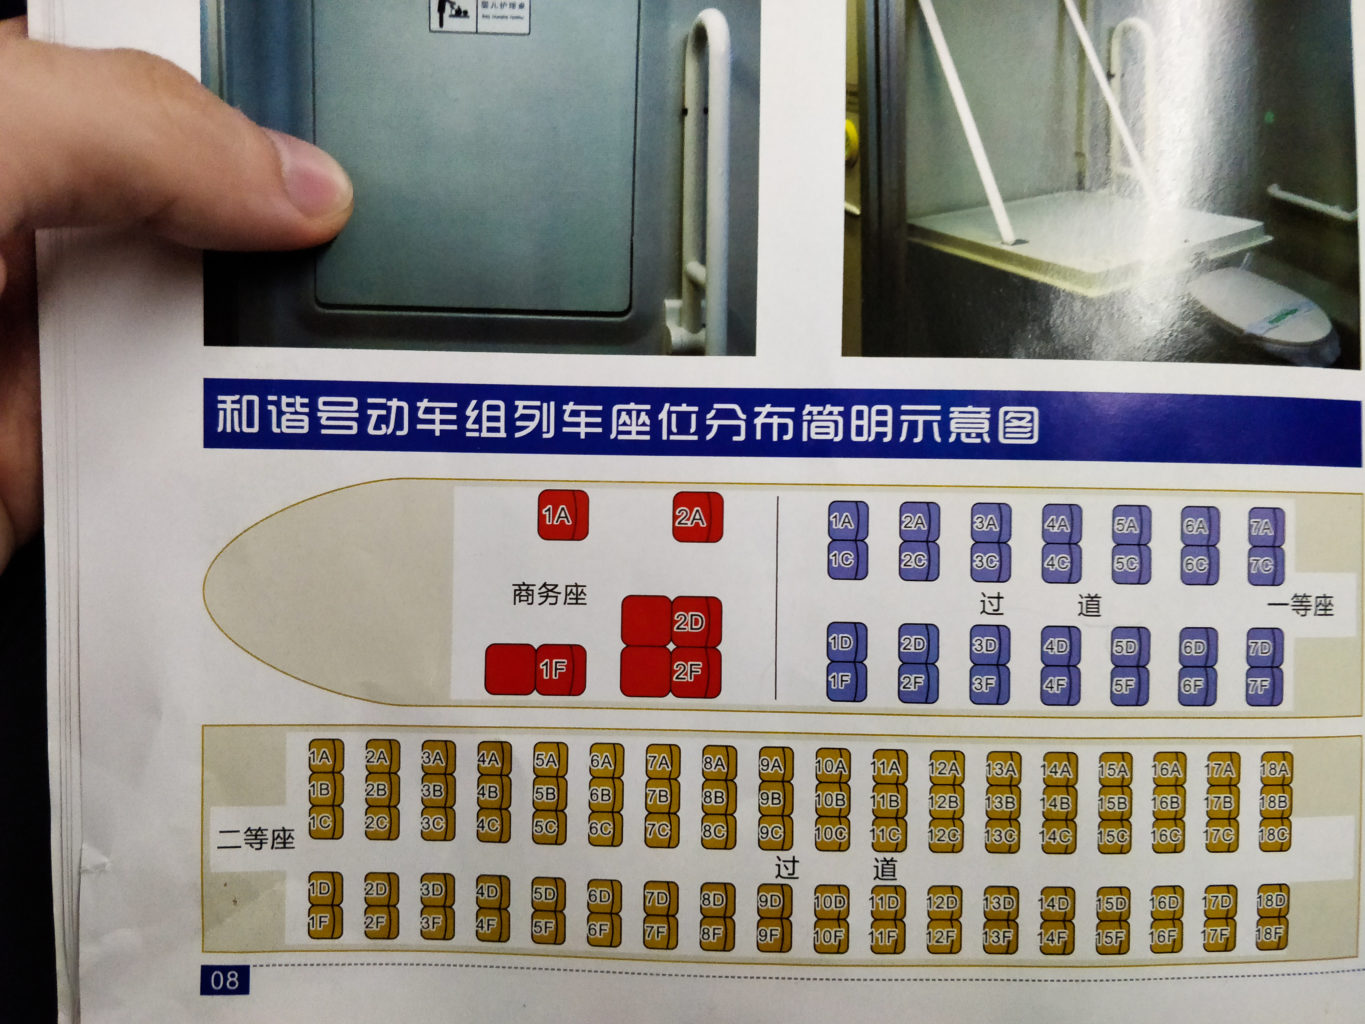 Chinese Train seat map